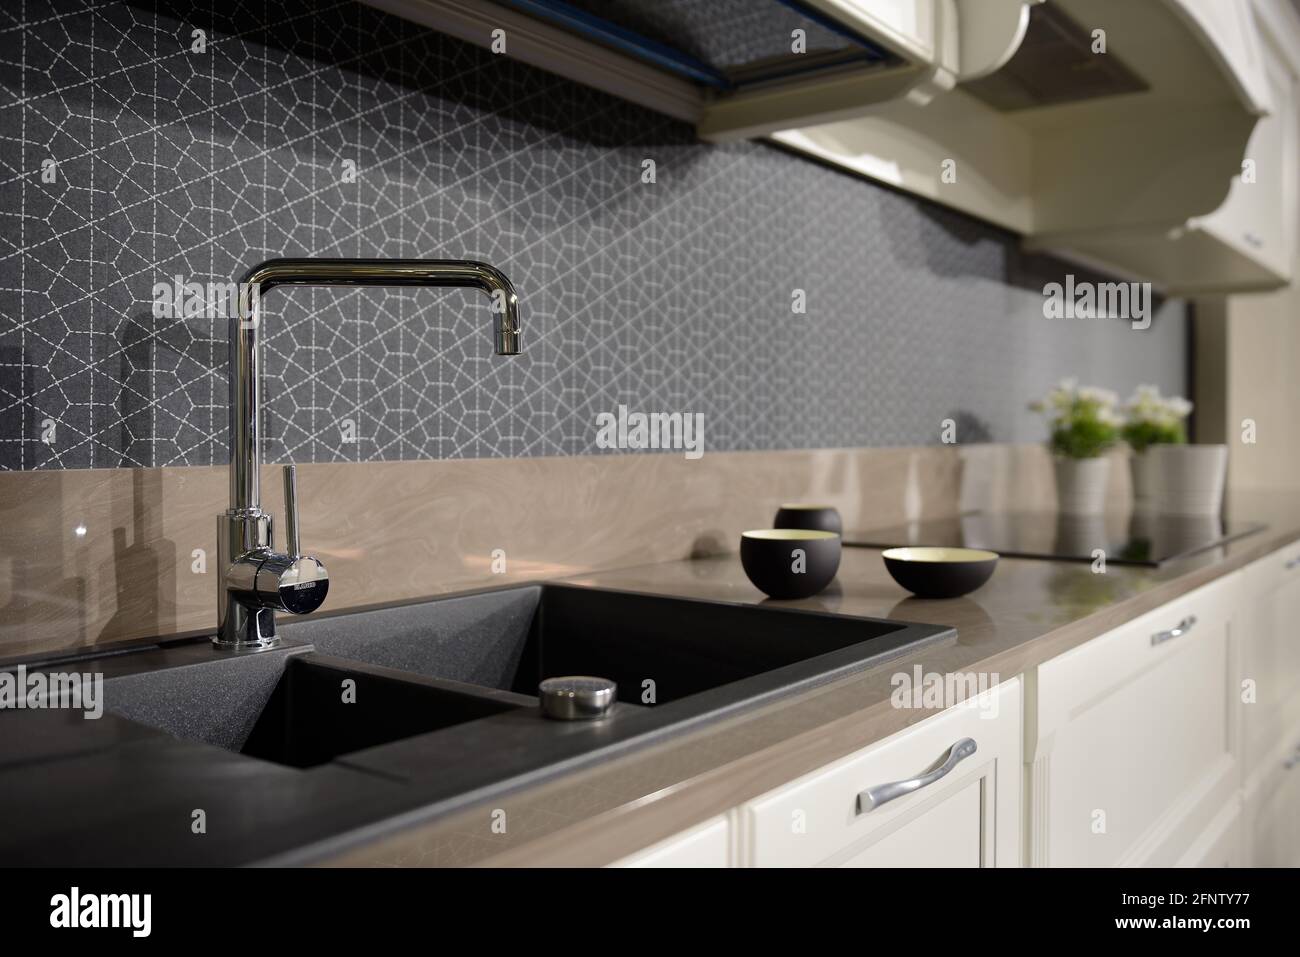 Clean Modern Kitchen. Minimalist decoration elements. Stock Photo